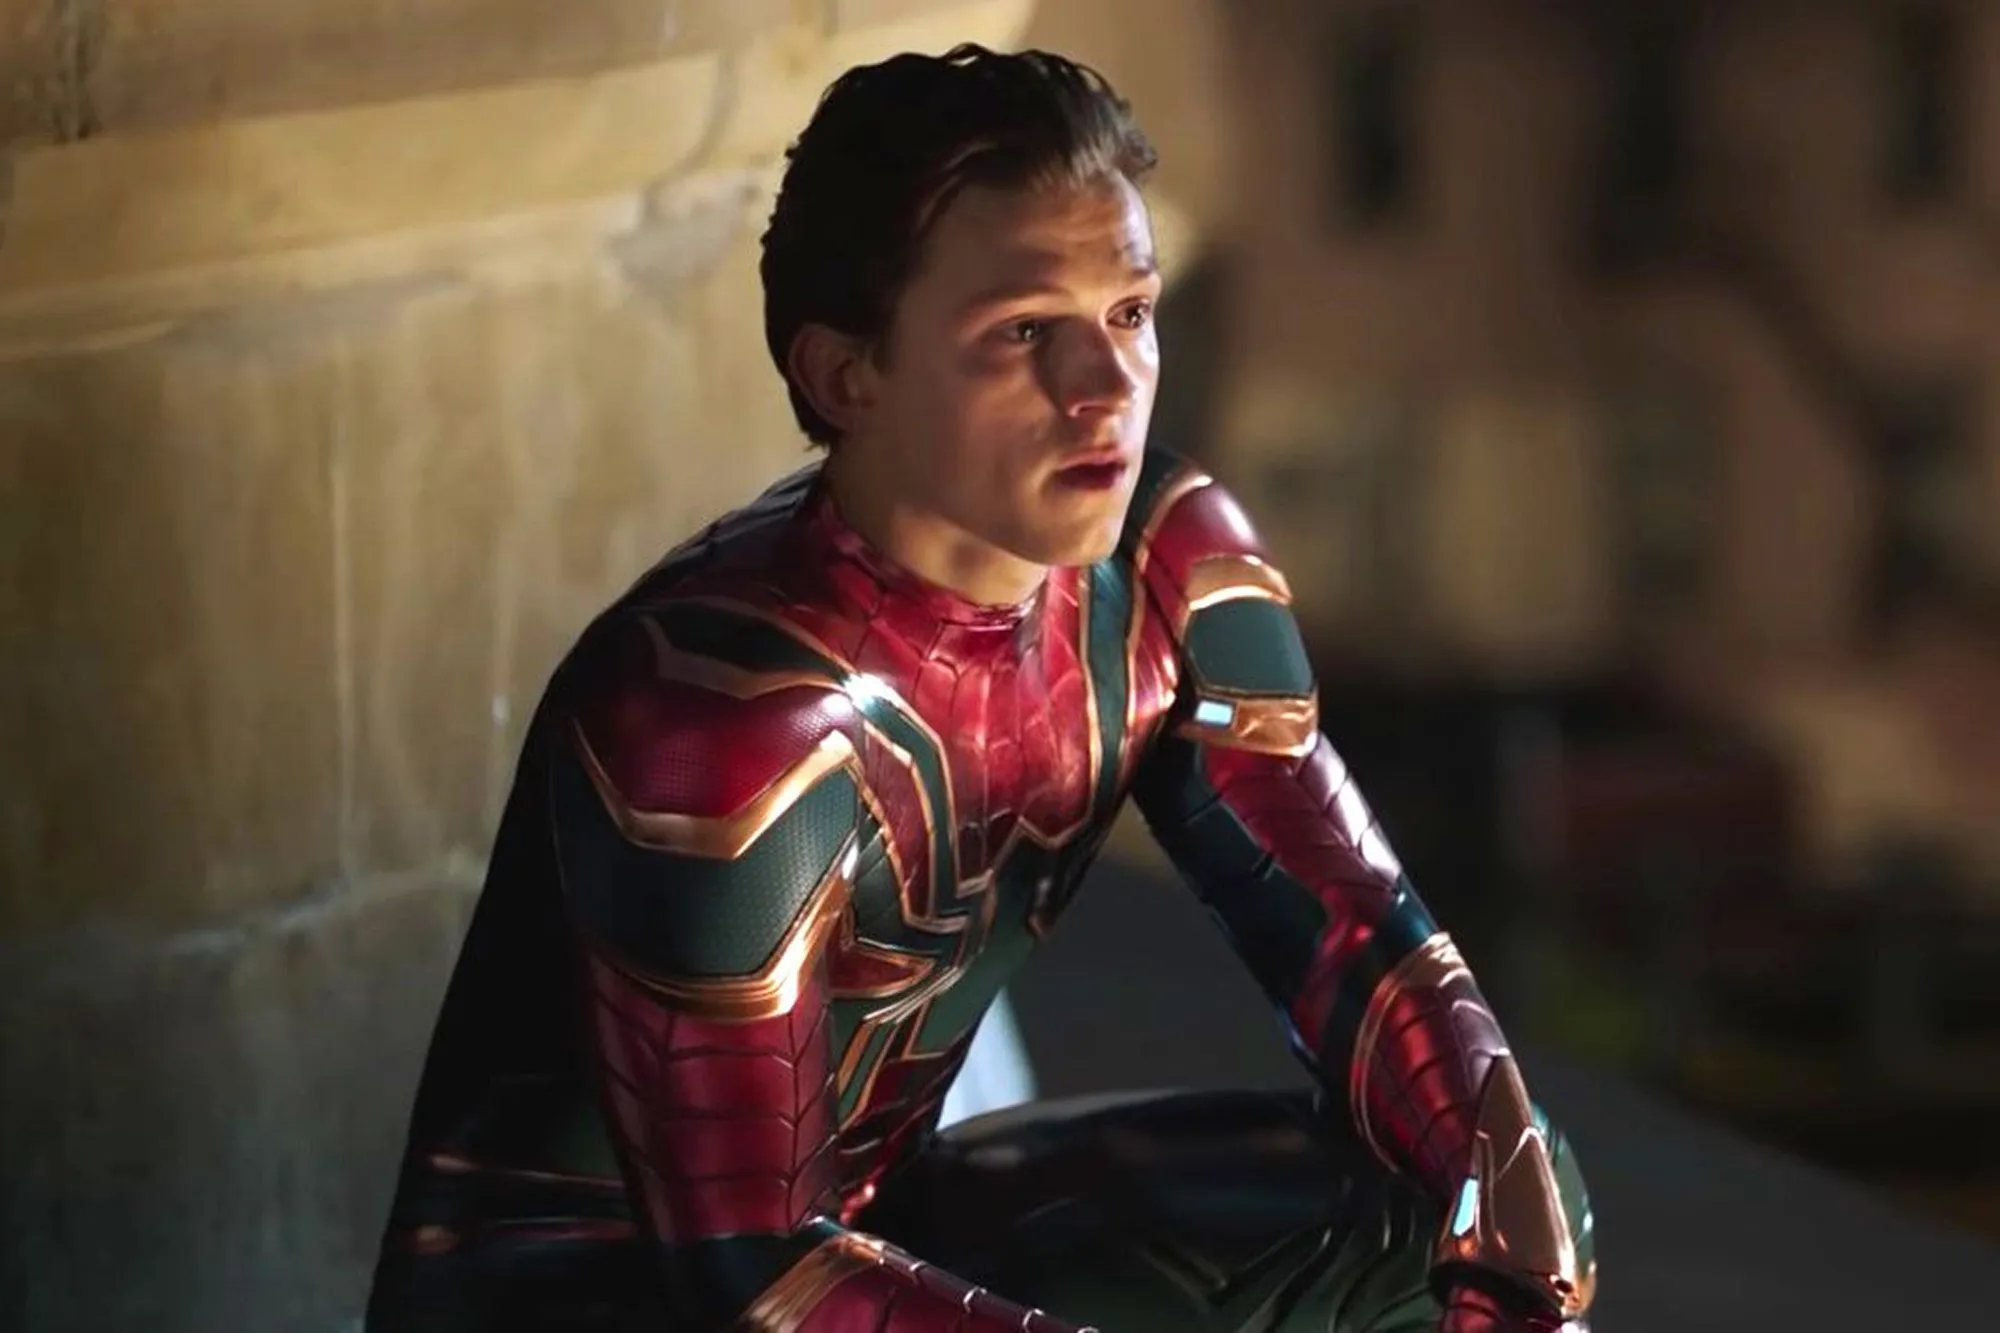 Tom Holland revelou que está trabalhando ao lado dos roteiristas do Marvel Studios para definir a trama de "Homem-Aranha 4". Em entrevista ao site Deadline, o ator comemorou ter sido incluído "pela primeira vez tão cedo no processo criativo".